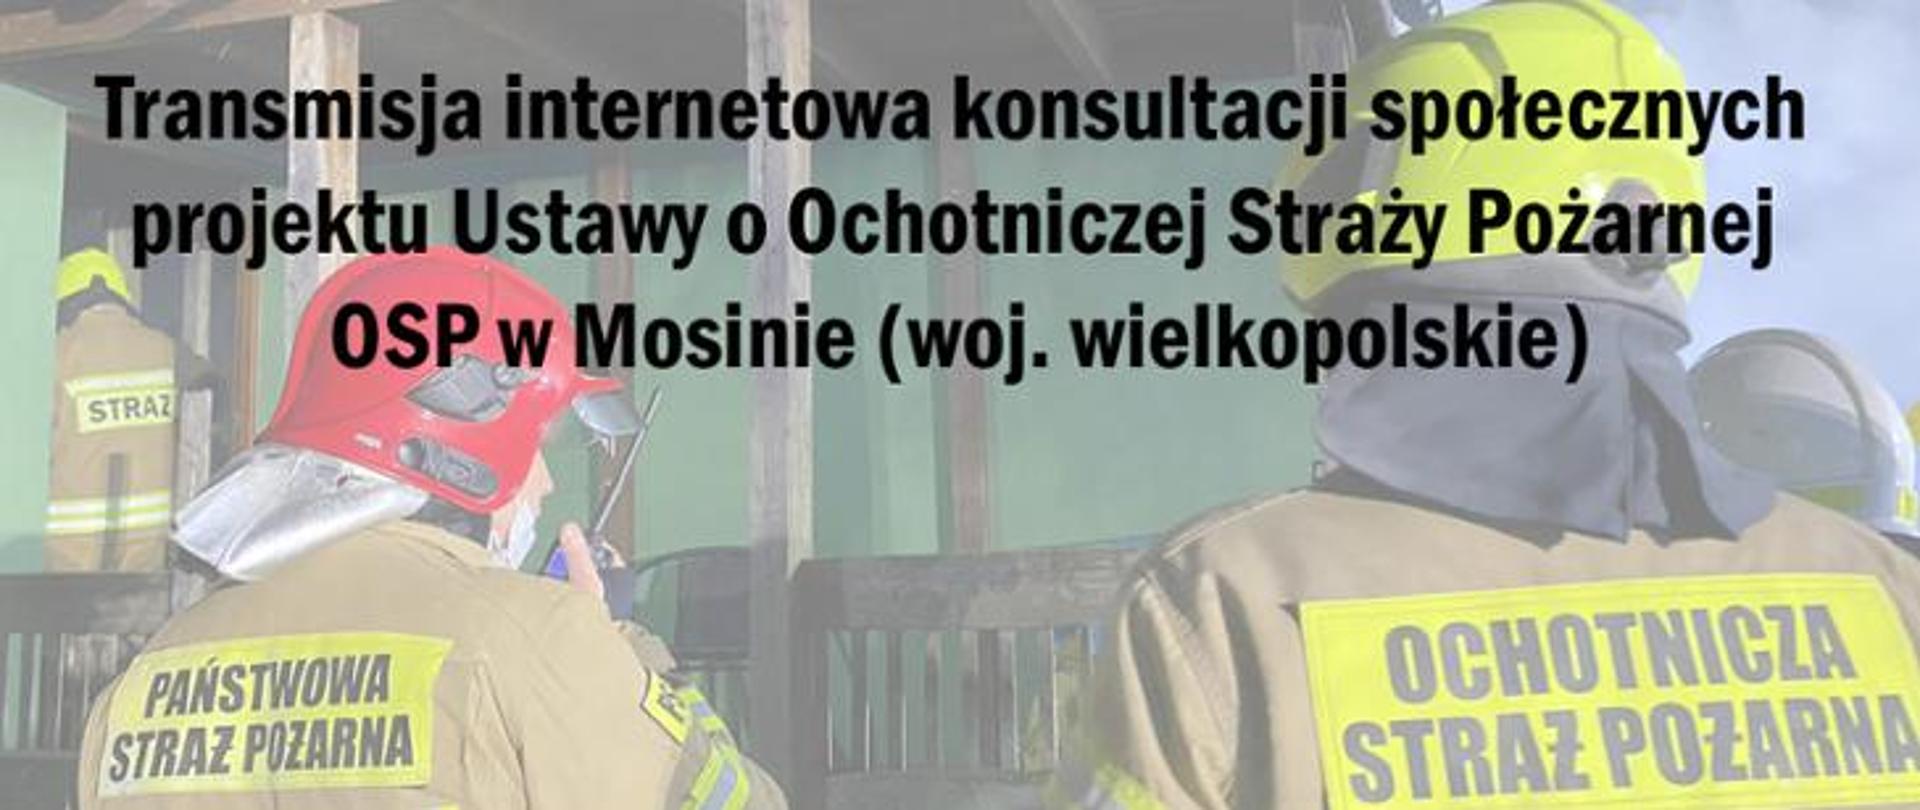 na zdjęciu napis Transmisja internetowa konsultacji społecznych projektu Ustawy o Ochotniczej Straży Pożarnej OSP w Mosinie (woj. wielkopolskie), w tle 2 strażaków jeden z napisem na plecach straż, drugi państwowa straż pożarna, trzeci ochotnicza straż pożarna